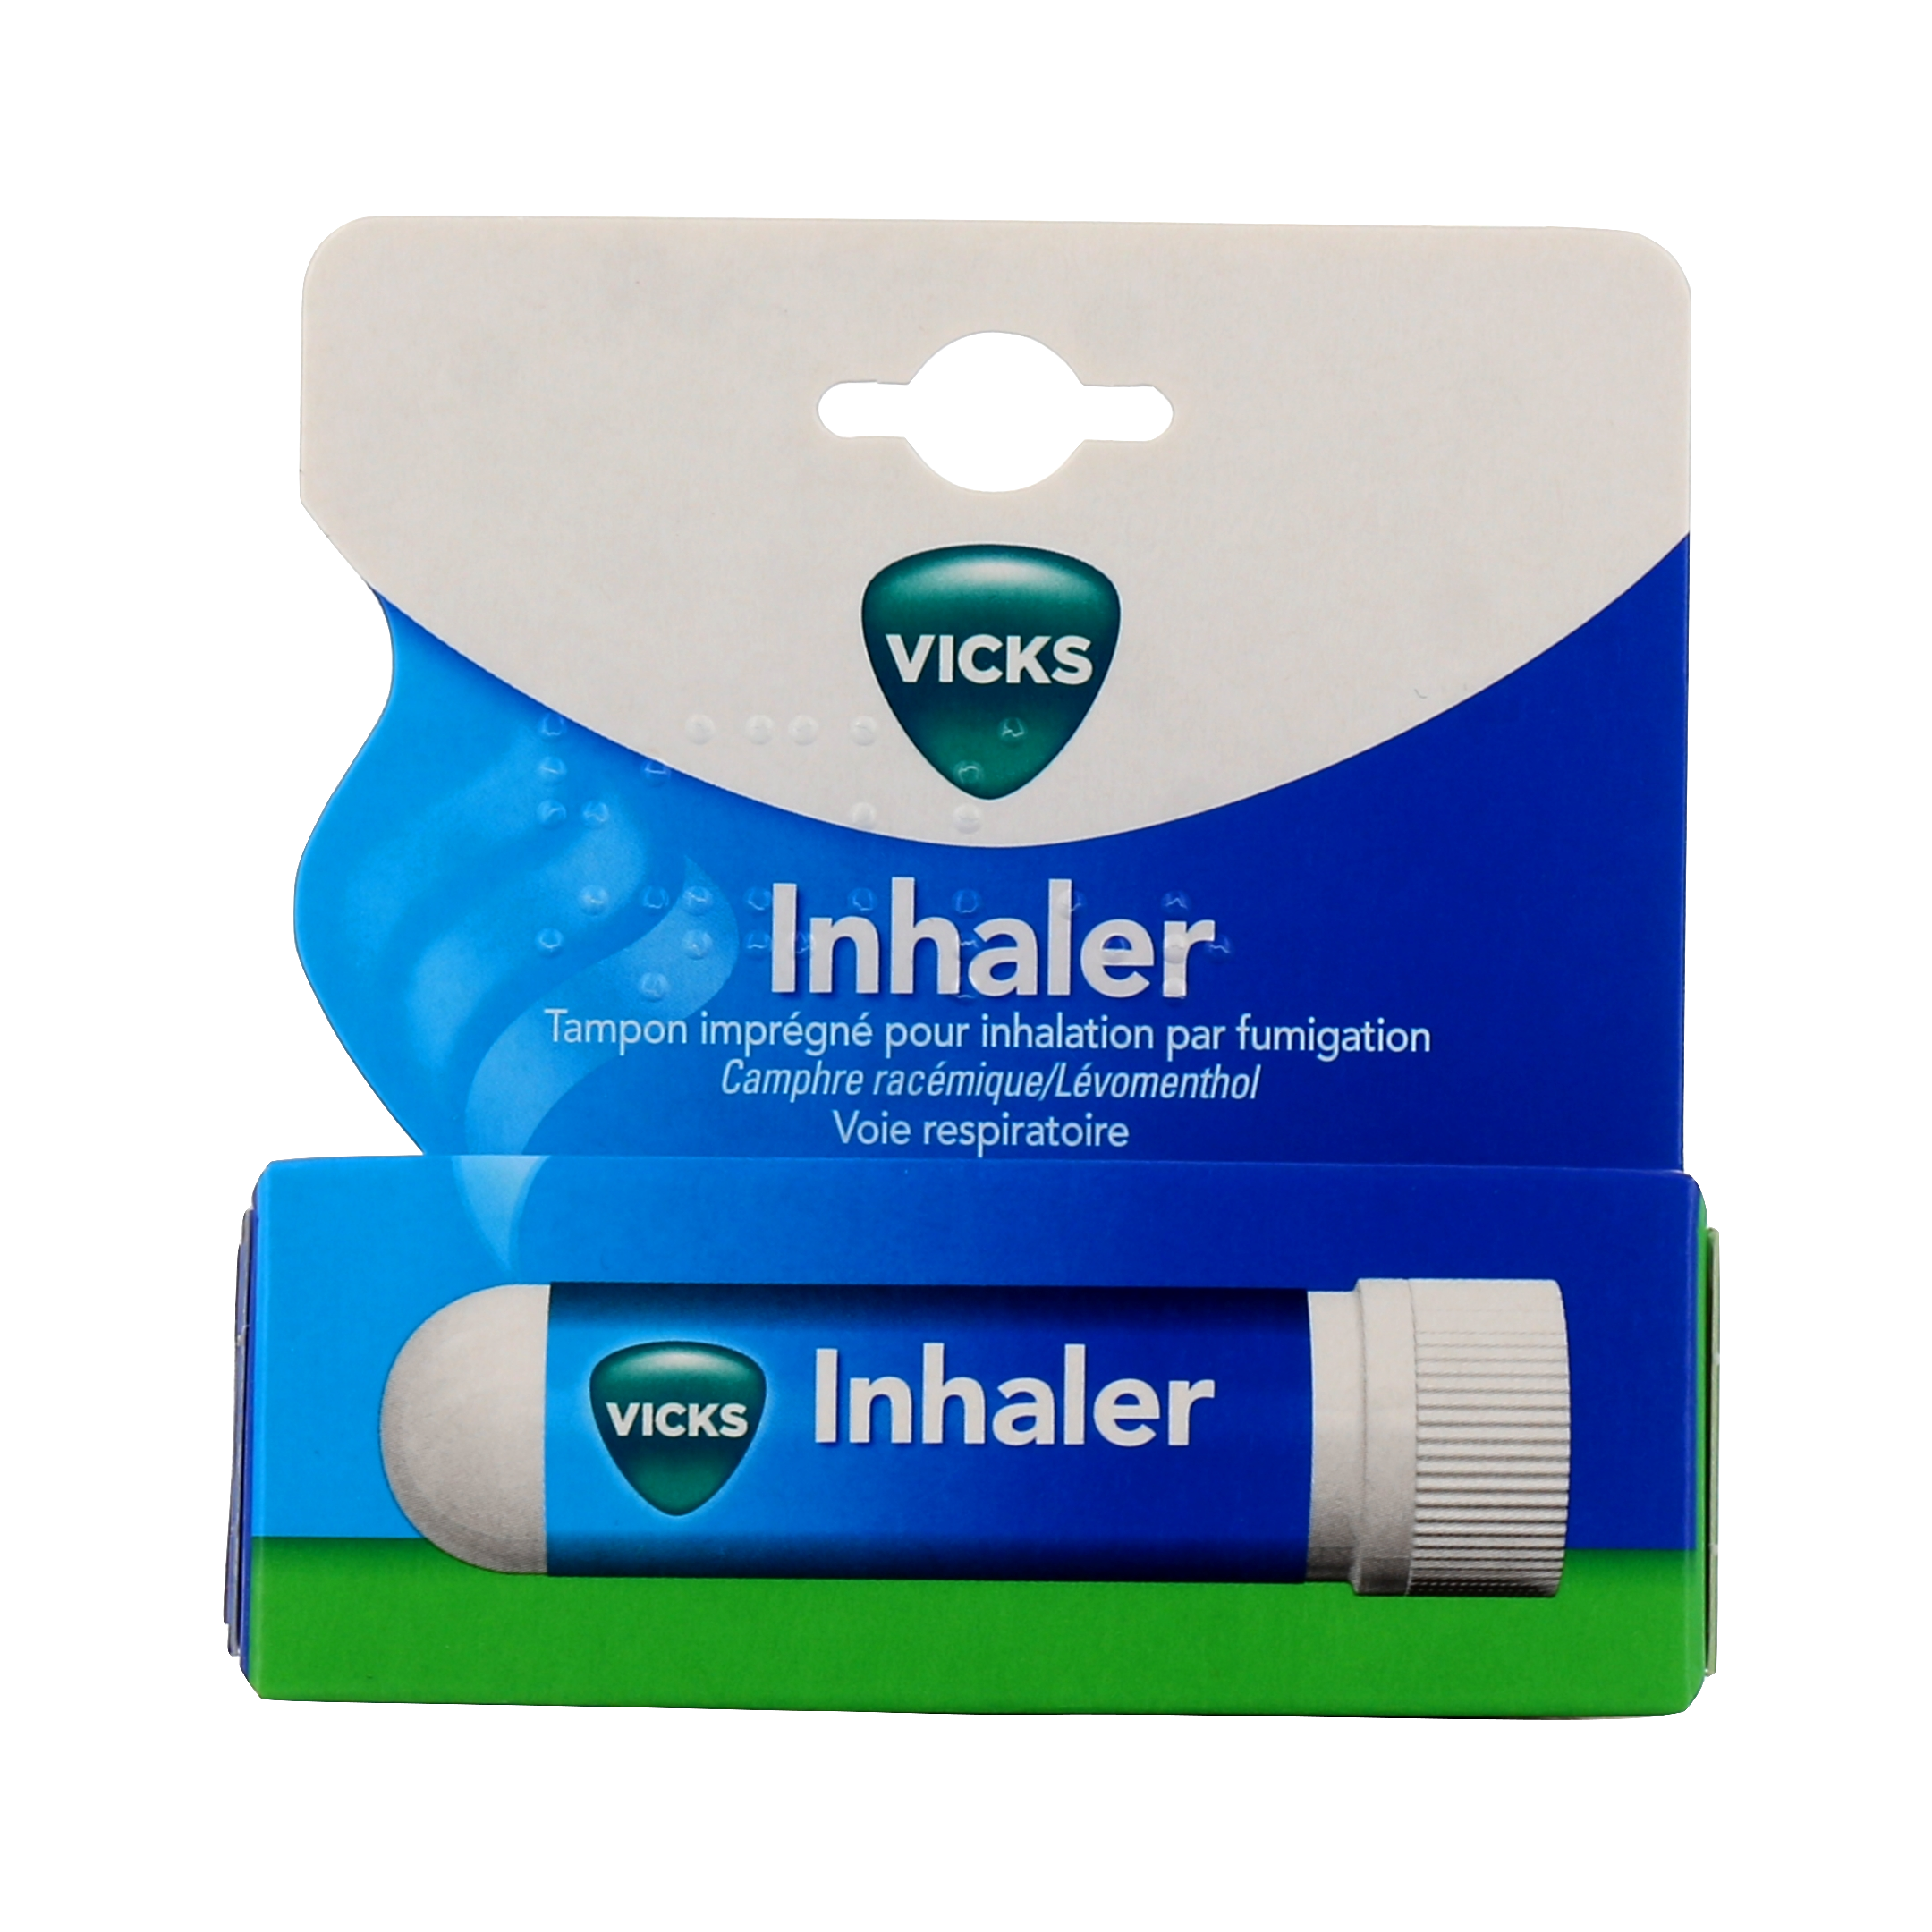 Vicks Inhaler N bâton inhalateur à petit prix